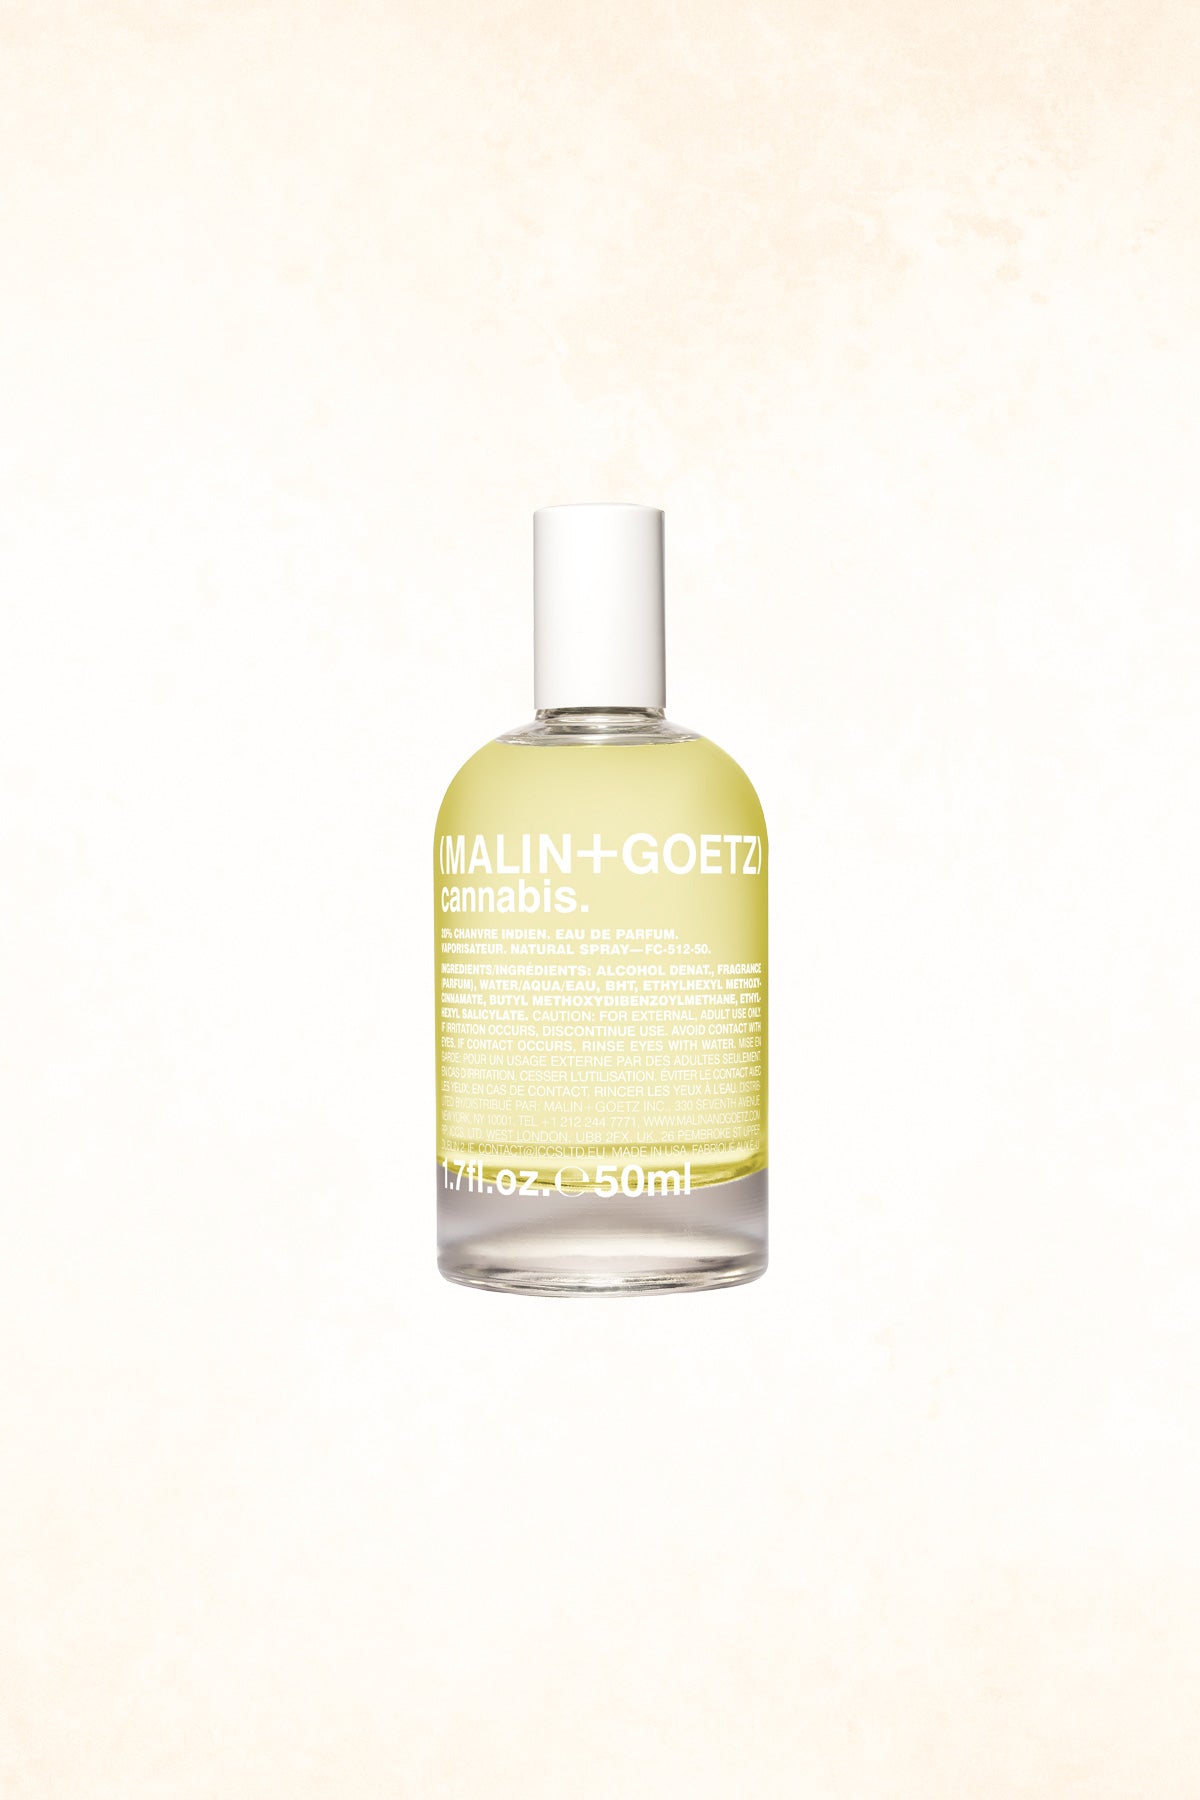 Malin+Goetz – Cannabis Eau De Parfume 1.7 oz / 50 ml